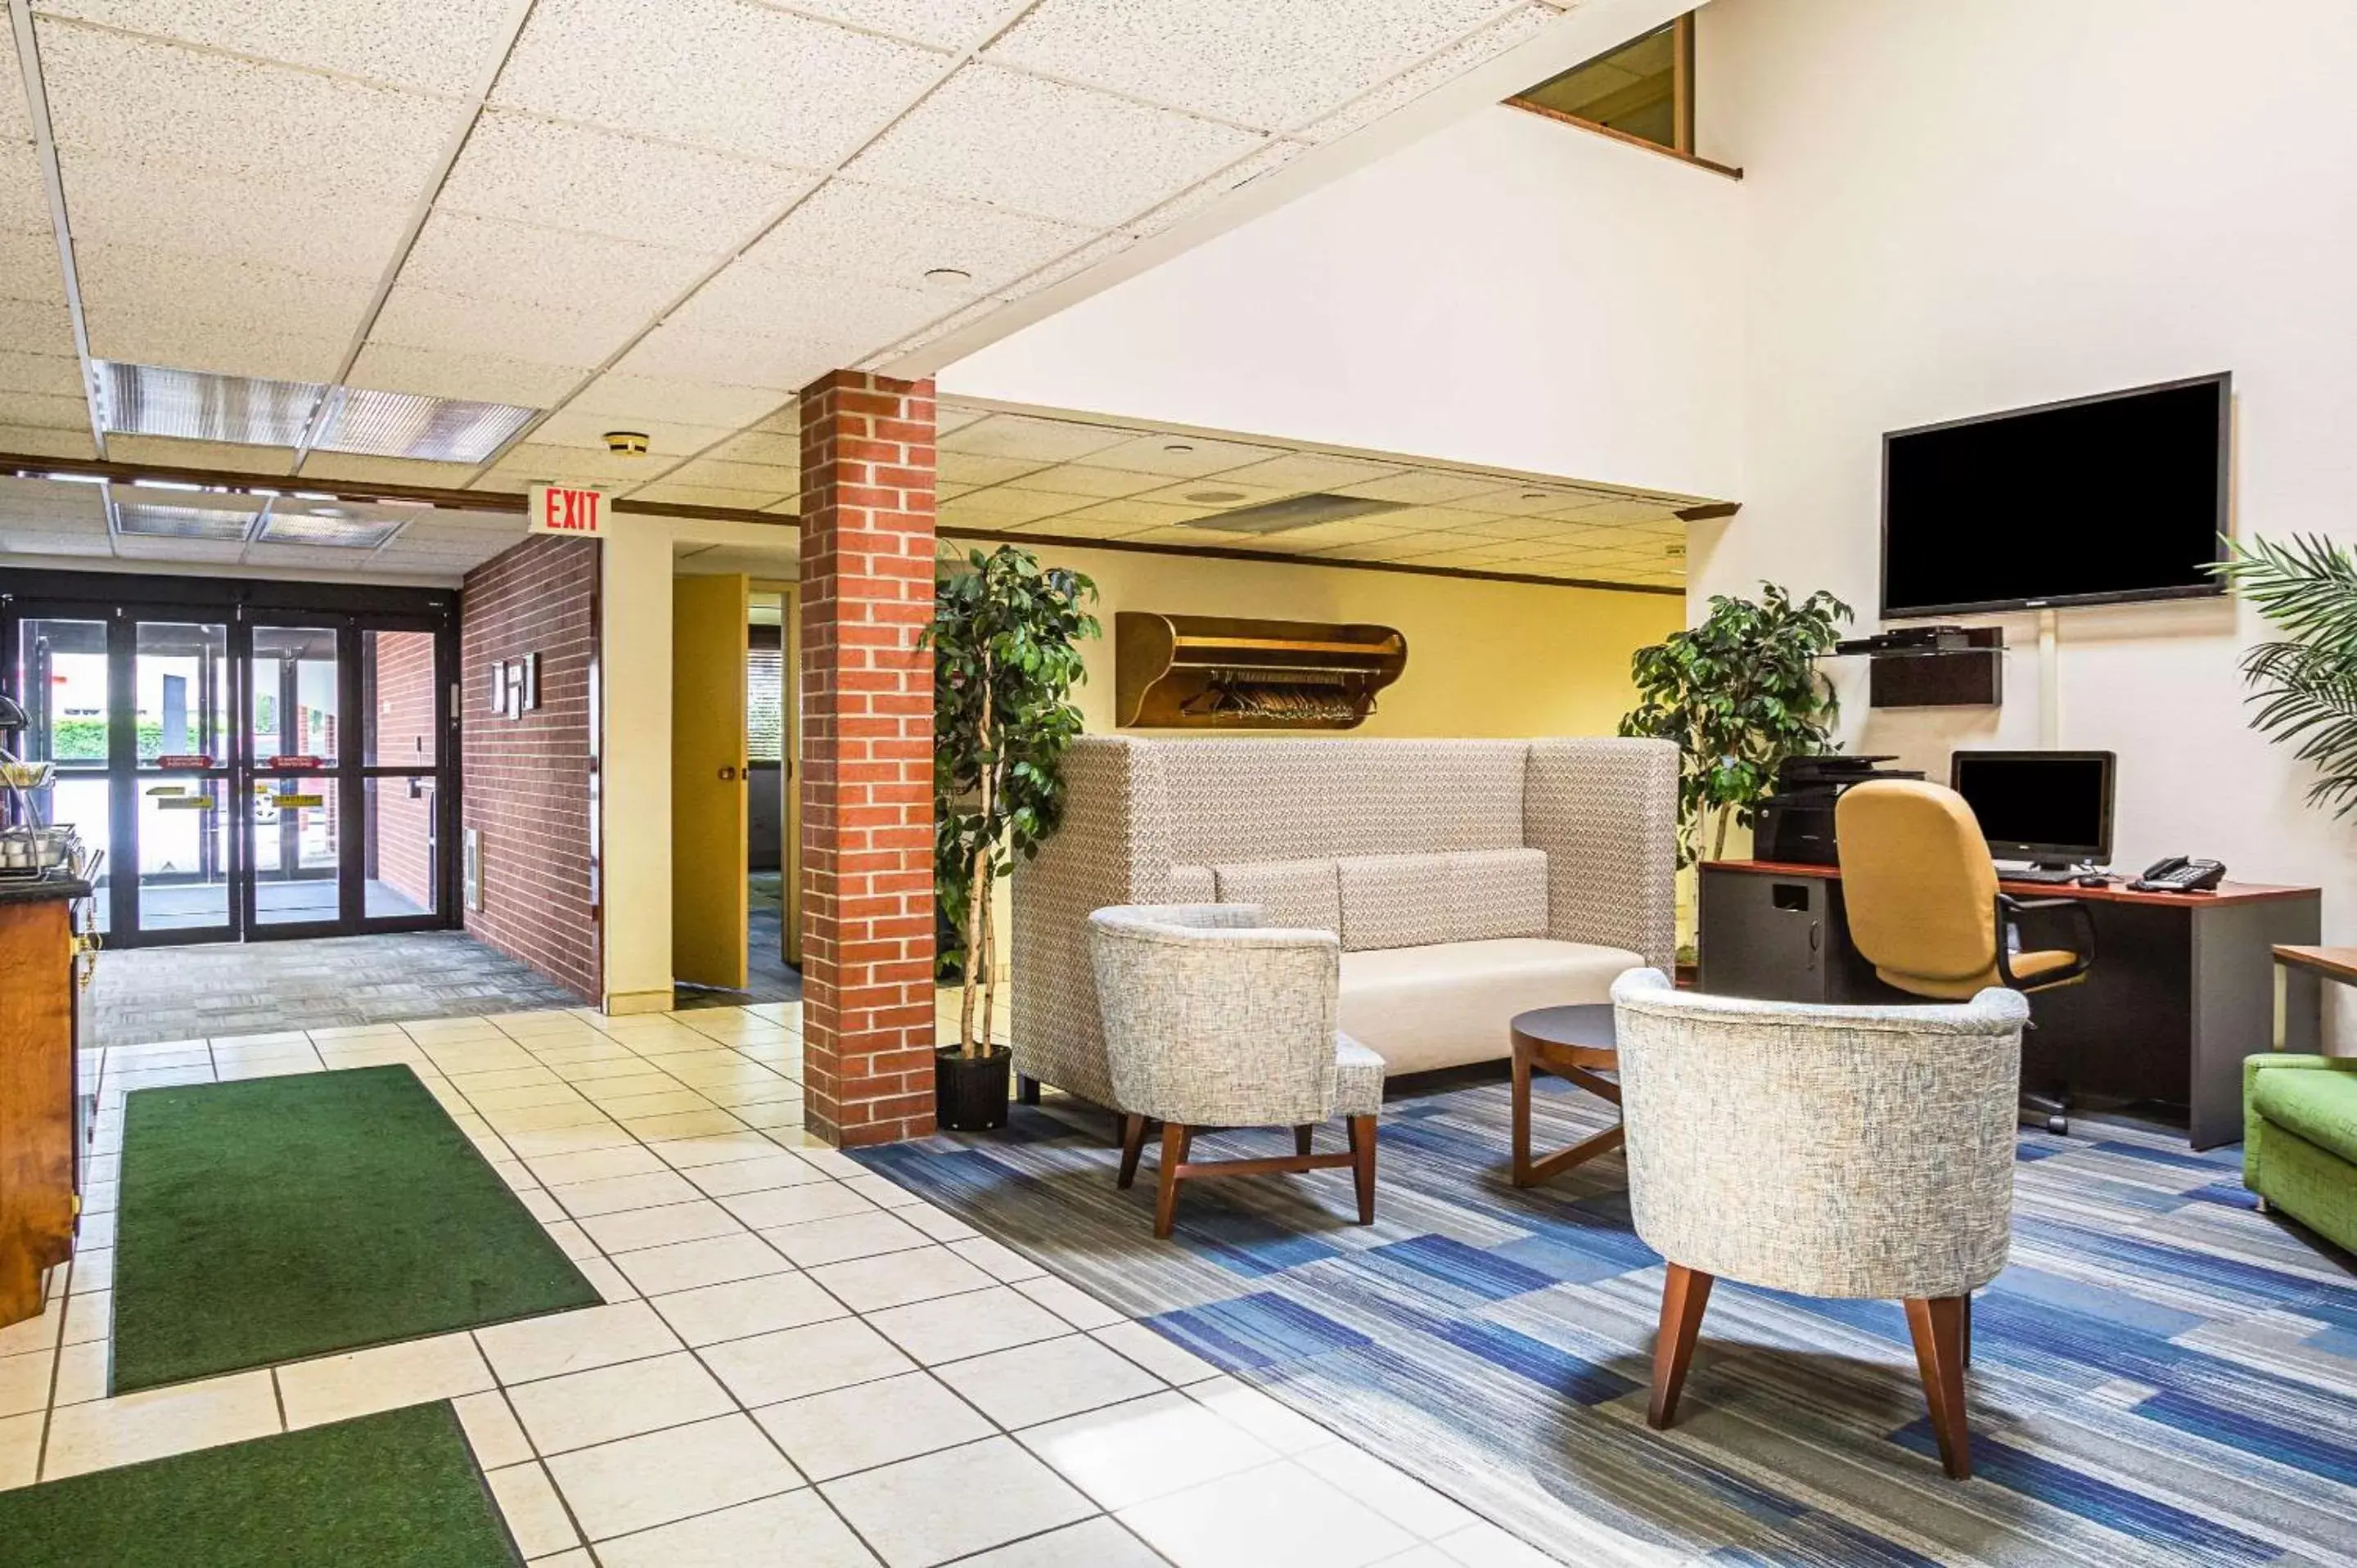 Lobby or reception, Lobby/Reception in Quality Inn & Suites Altoona Pennsylvania